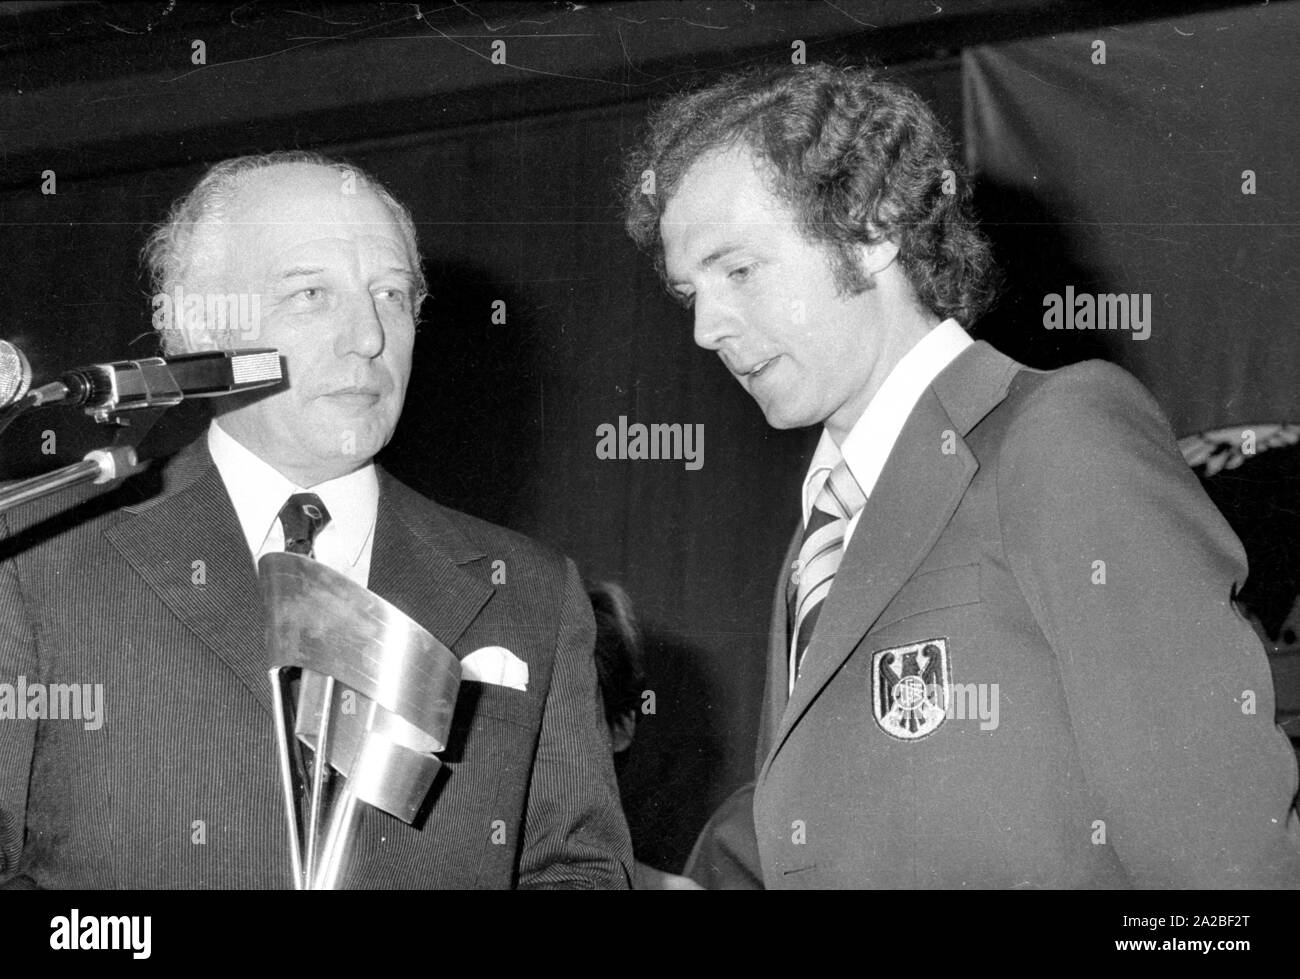 Bundespräsident Walter Scheel (links) und Fußballer Franz Beckenbauer (r) am Bankett im Hotel Hilton in München. Scheel präsentiert Beckenbauer die Fairness Cup im Namen des Teams. Stockfoto